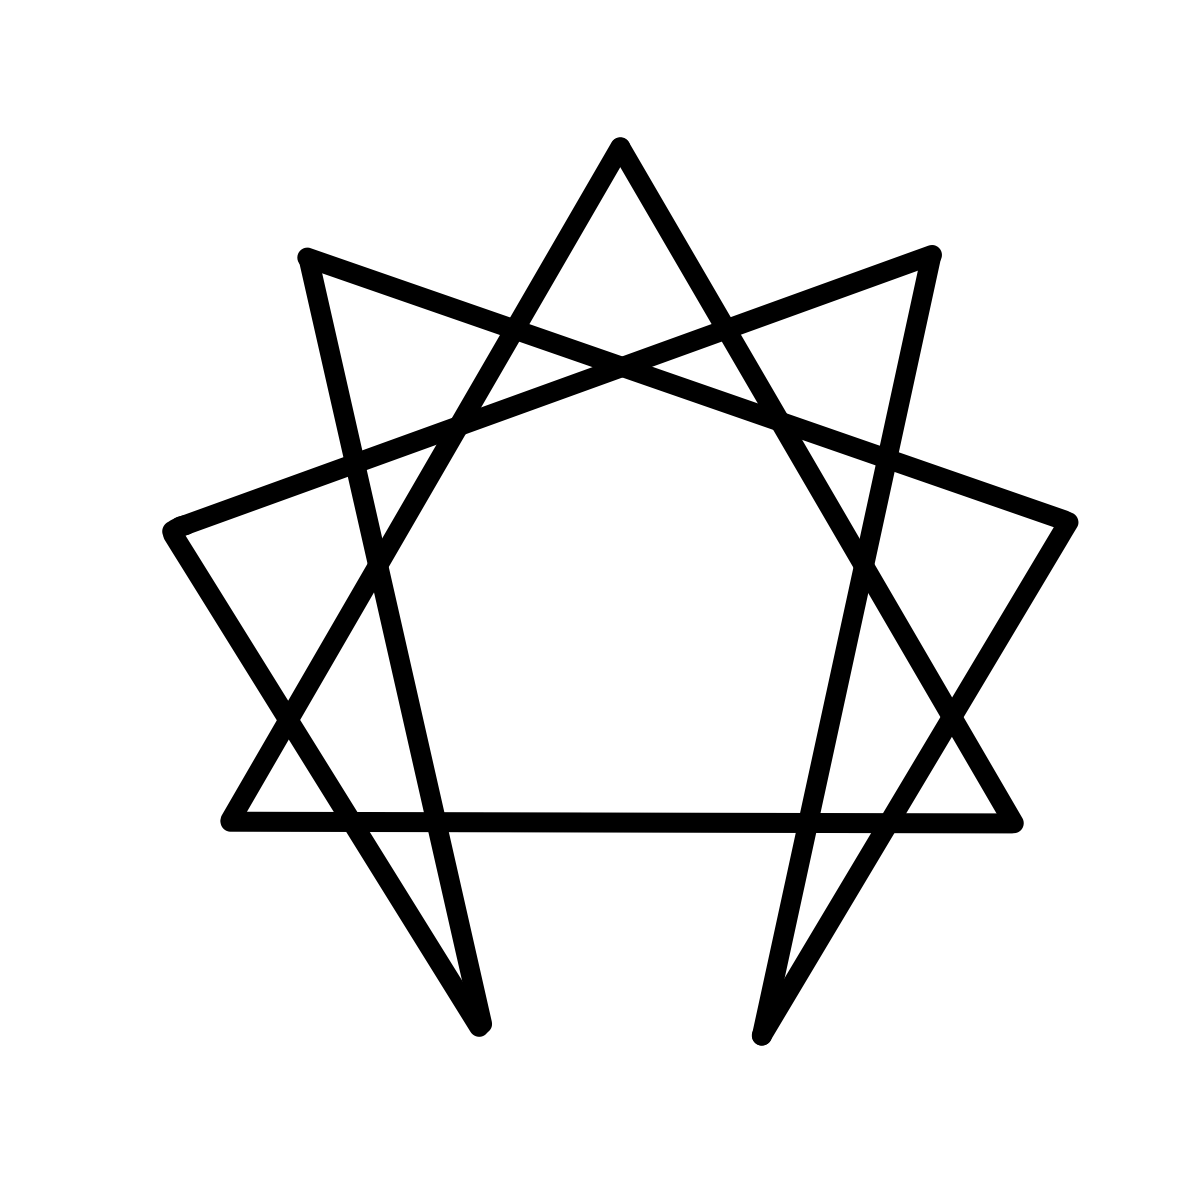 Illustration af enneagram-stjerne